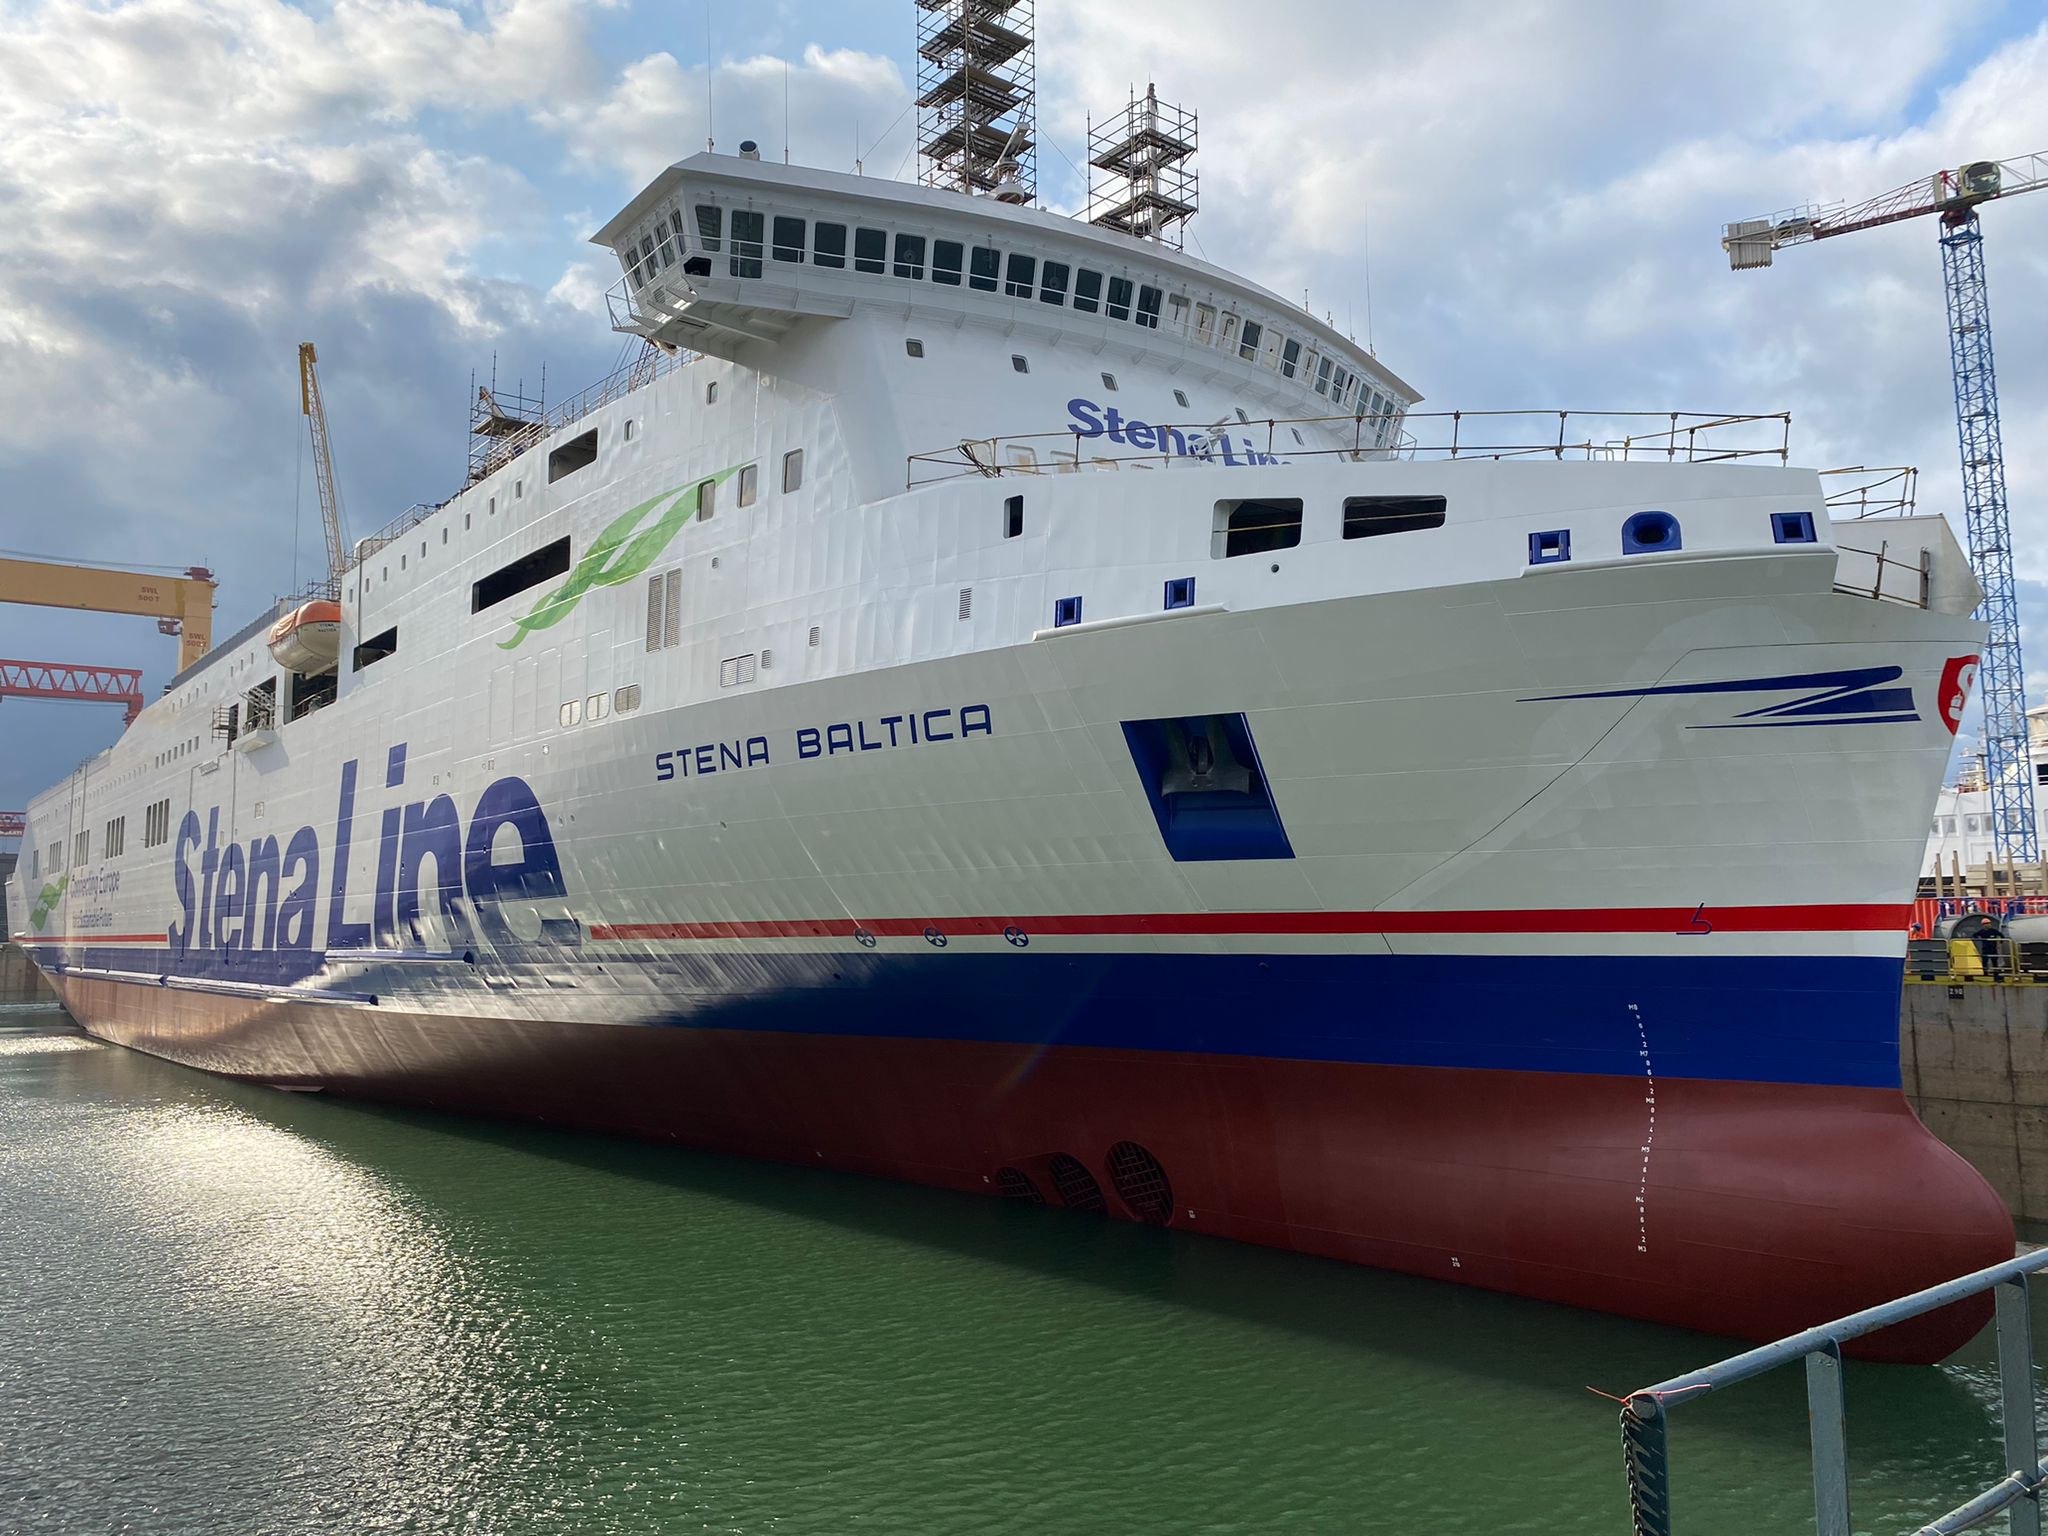 Stena Mersey tocca di nuovo il mare con il nuovo nome di Stena Baltica e completamente rinnovata